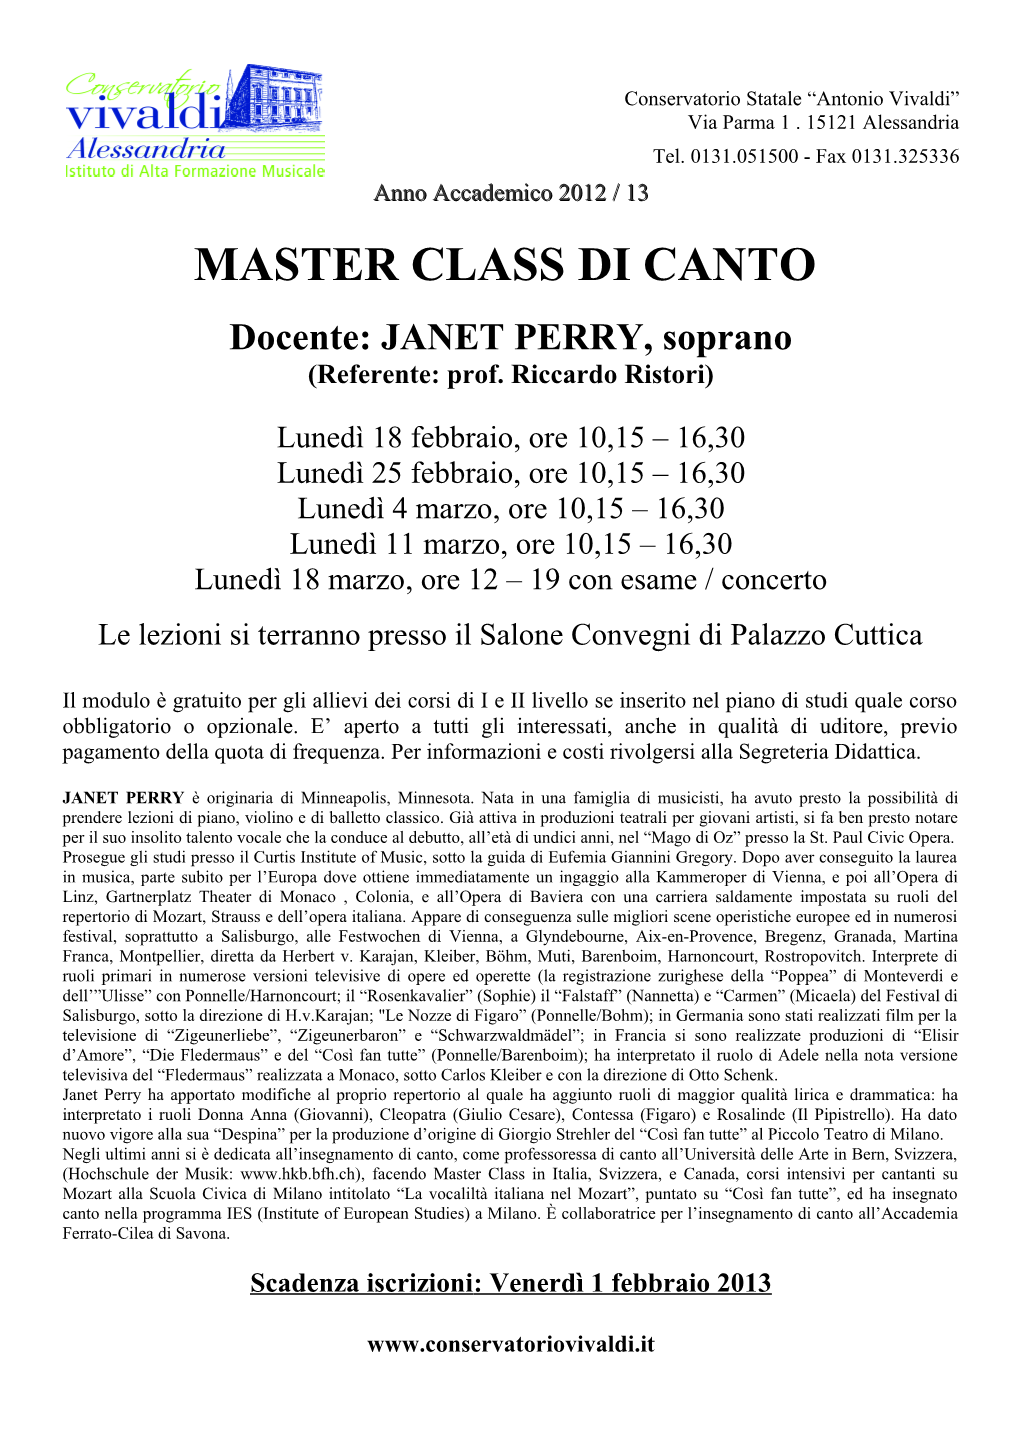 MASTER CLASS DI CANTO Docente: JANET PERRY, Soprano (Referente: Prof